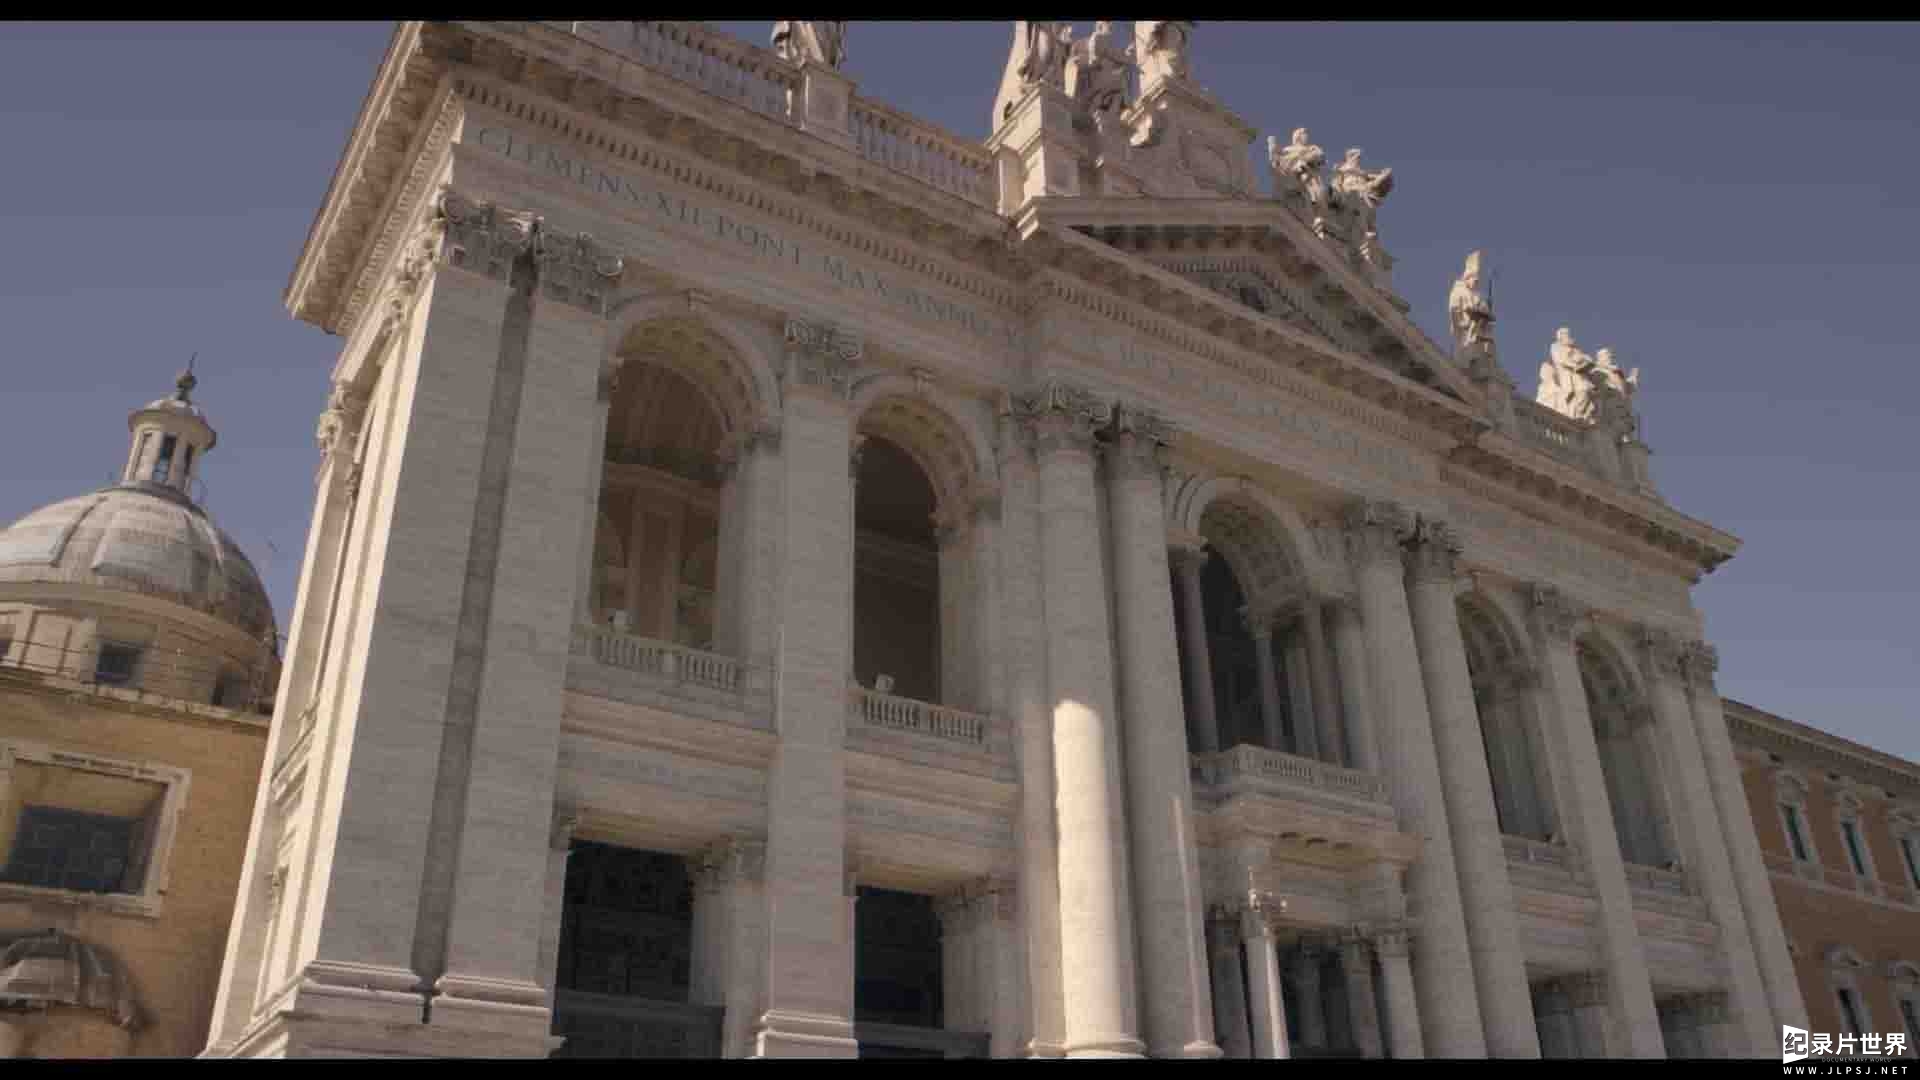 意大利纪录片《罗马四大圣殿 St. Peter's and the Papal Basilicas of Rome 2016》全1集 